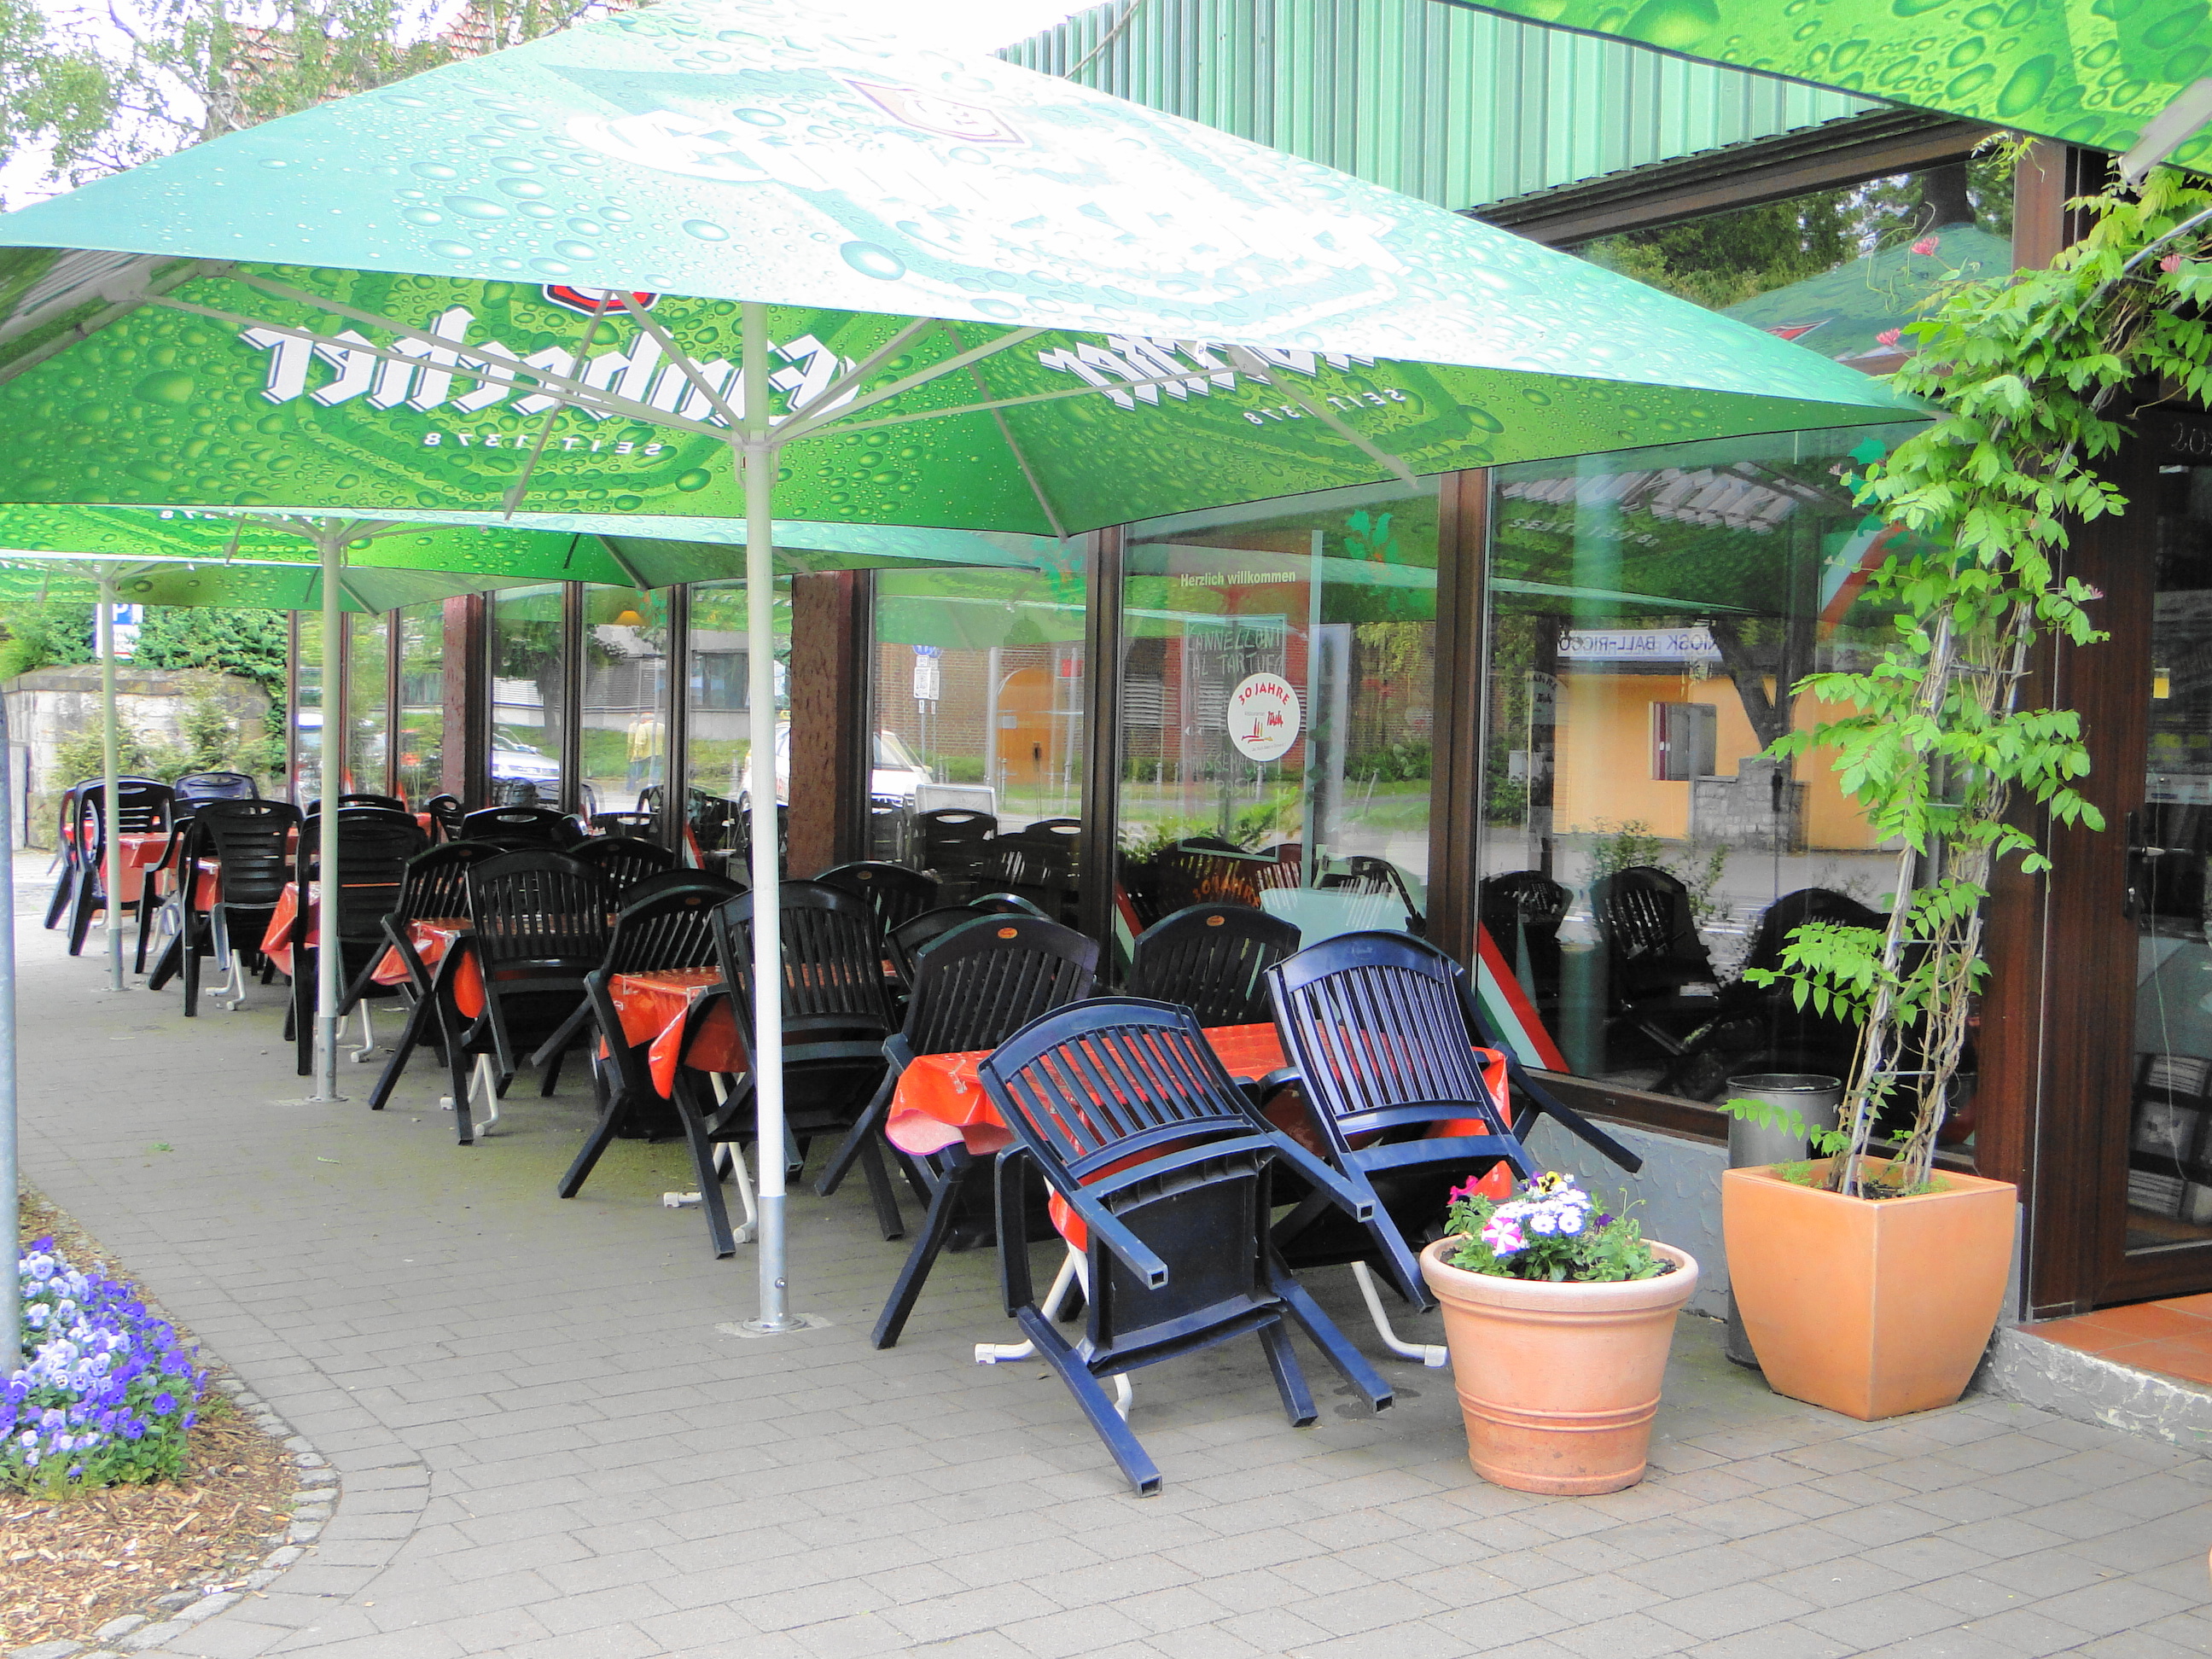 Pizzeria Ristorante Italia seit 30 Jahren in Einbeck in der Altendorfer Str. 48, Außensitzbereich